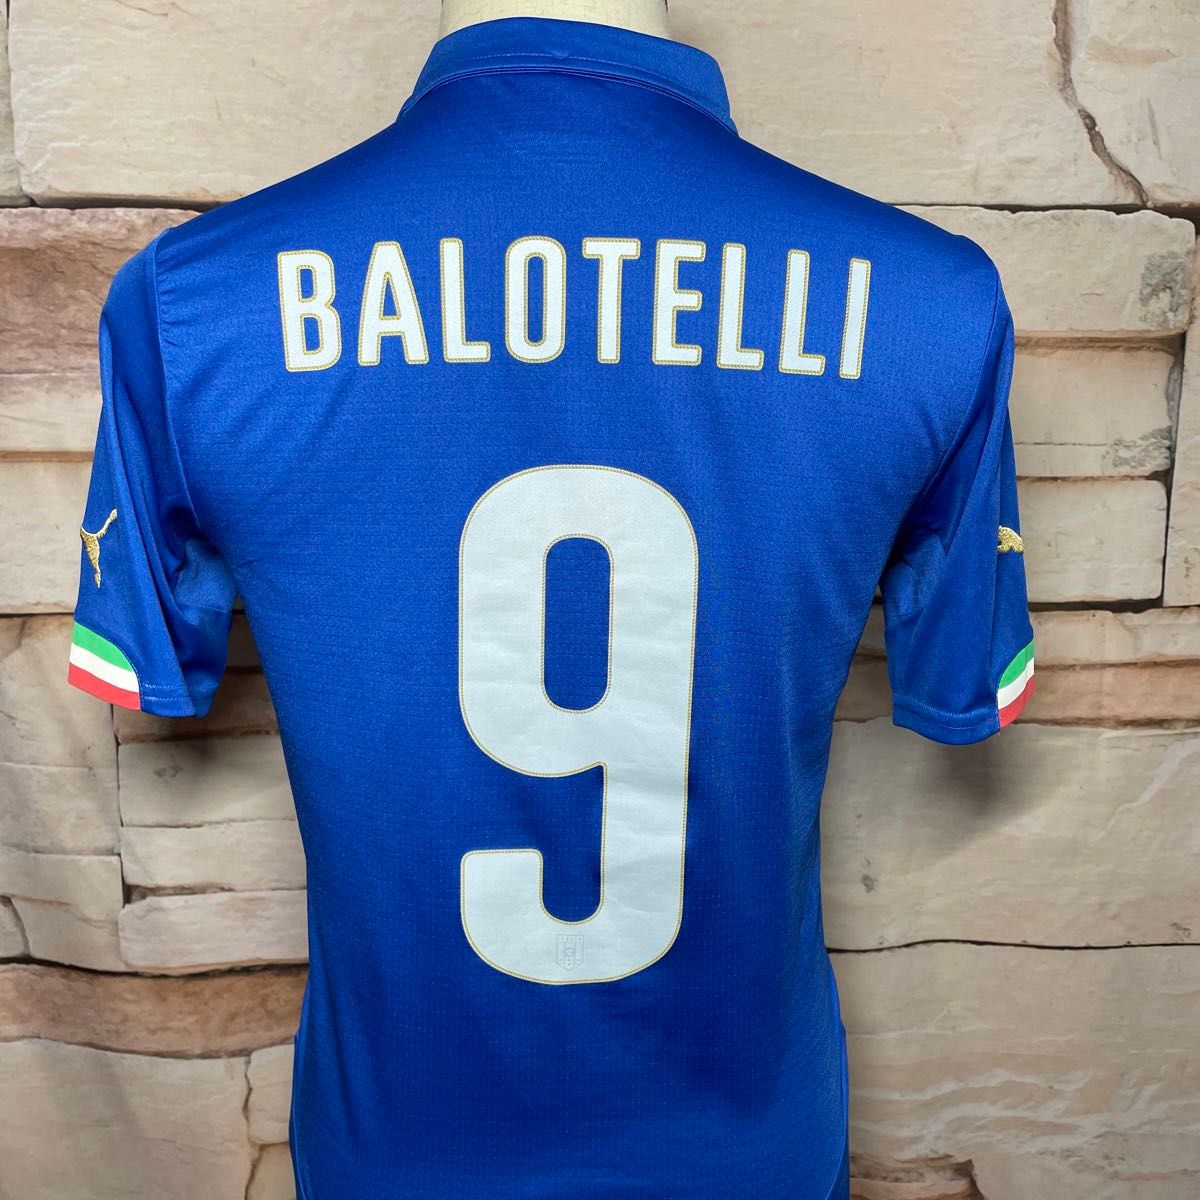 イタリア代表 ユニフォーム 2014シーズン バロテッリ ブラジルワールドカップ  サッカー  プーマ